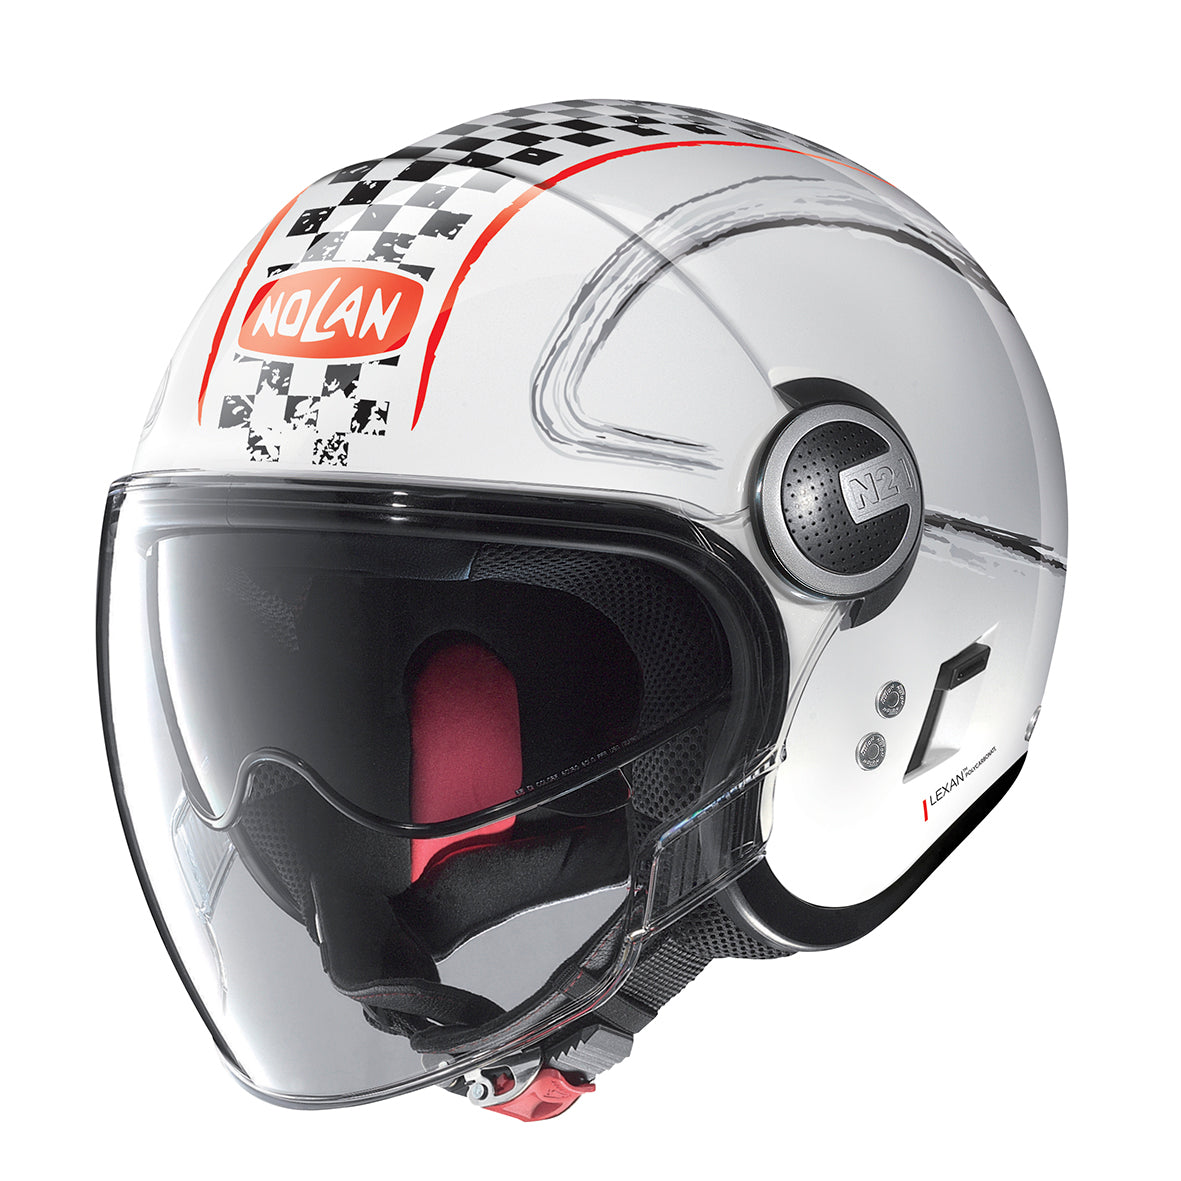 Nolan N21 Visor Getaway 60 Metal White Helmet